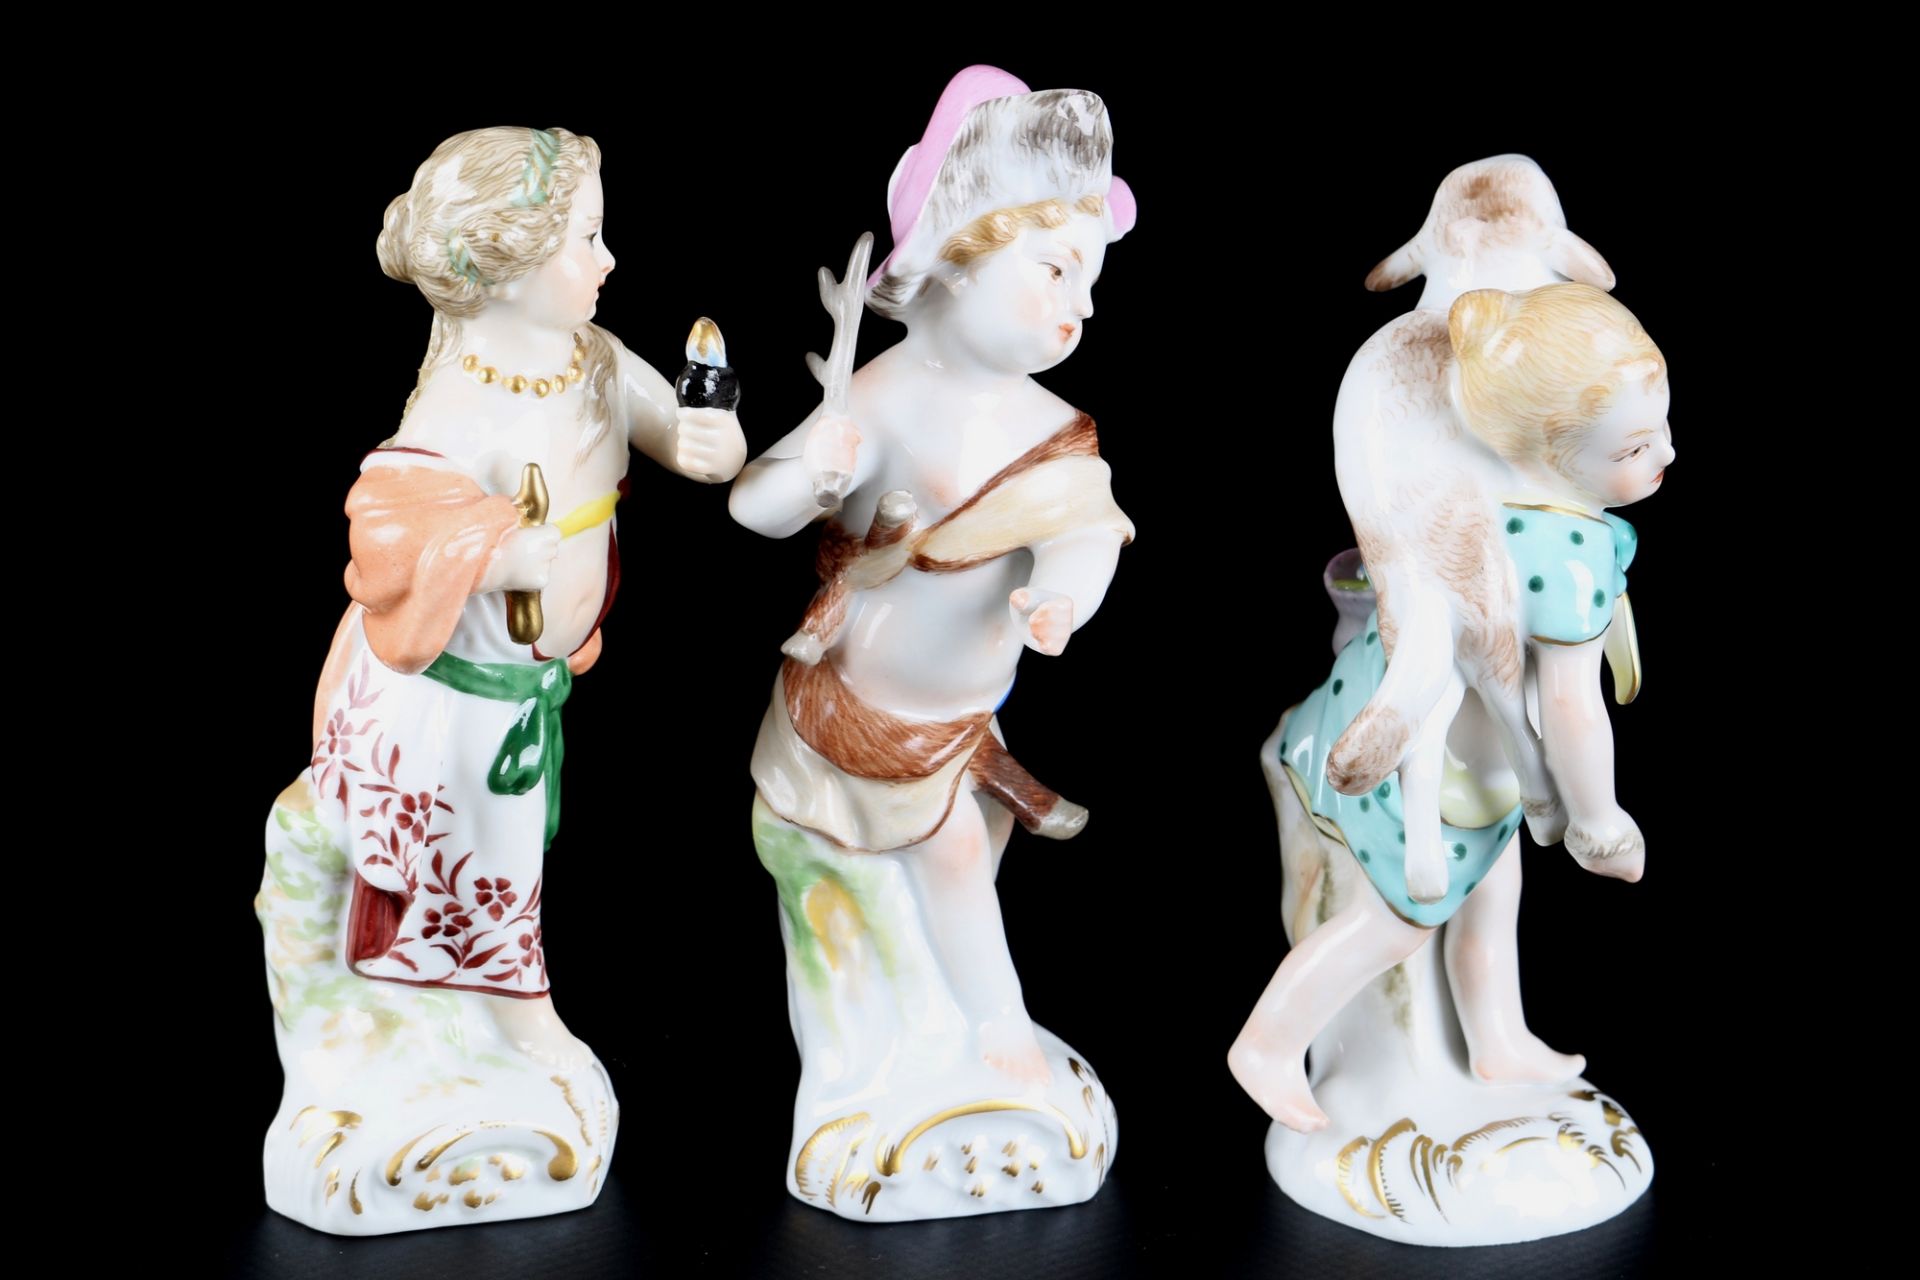 KPM Berlin 3 Kinderfiguren, porcelain figures, - Image 4 of 5